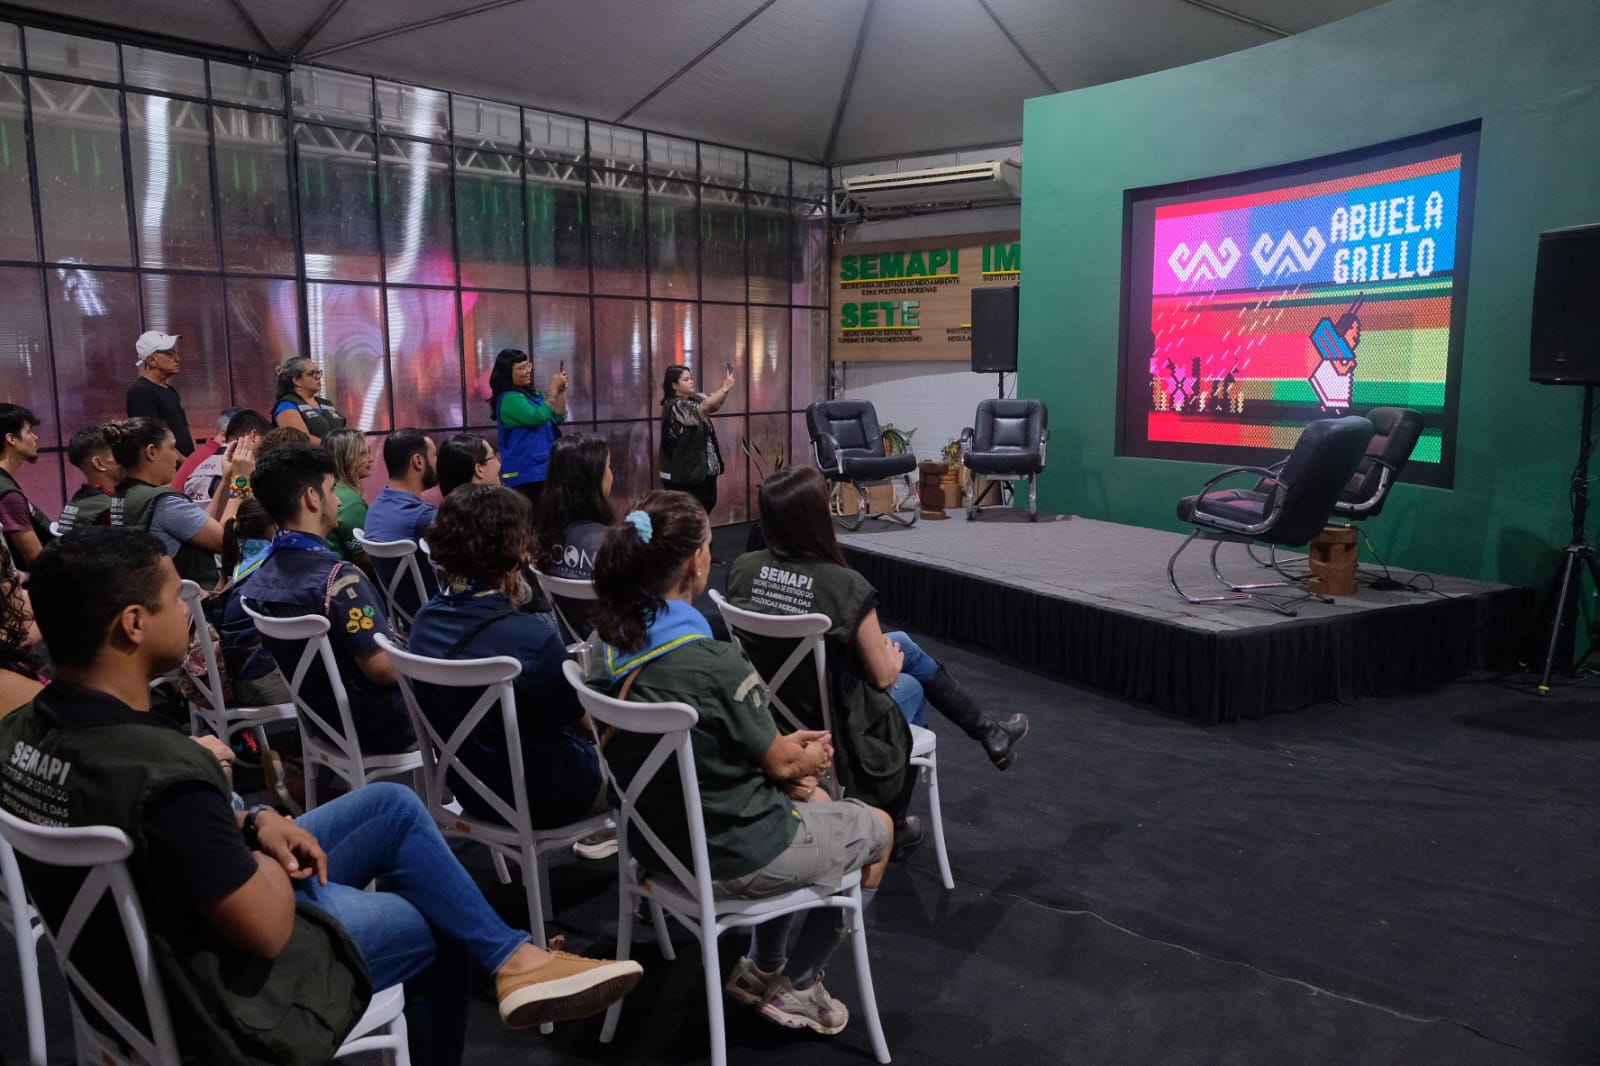 Na Expoacre, Semapi apresenta Cine Verde para crianças com a animação Vovó Grilo